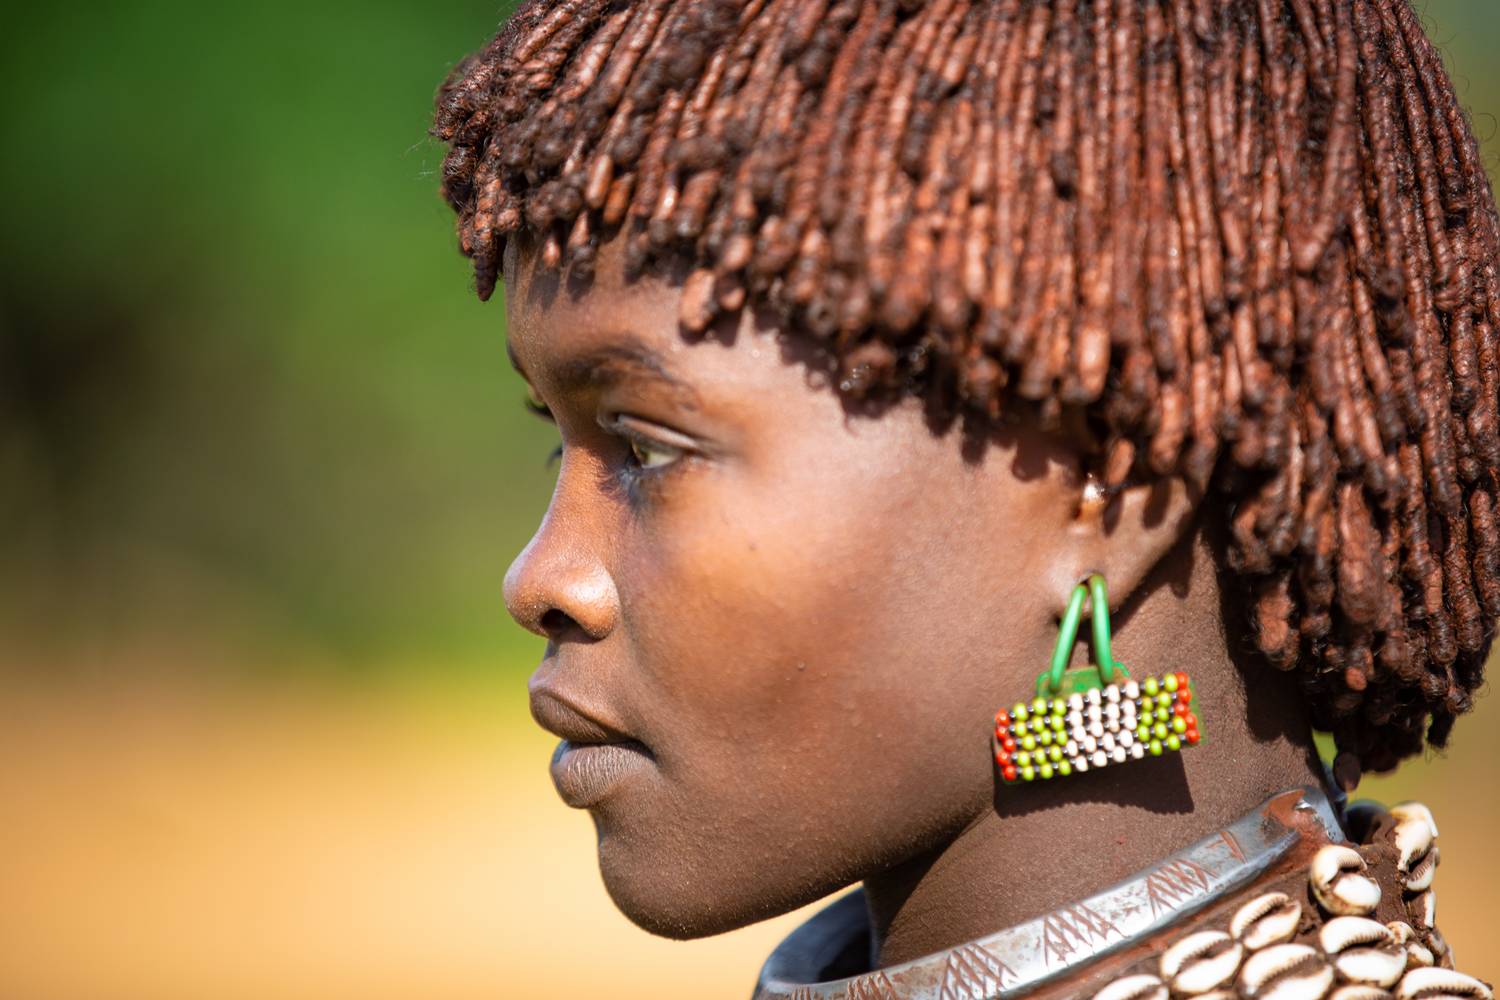 Portrait Äthiopien Afrika Omo Valley Hamer Stamm de Miro May